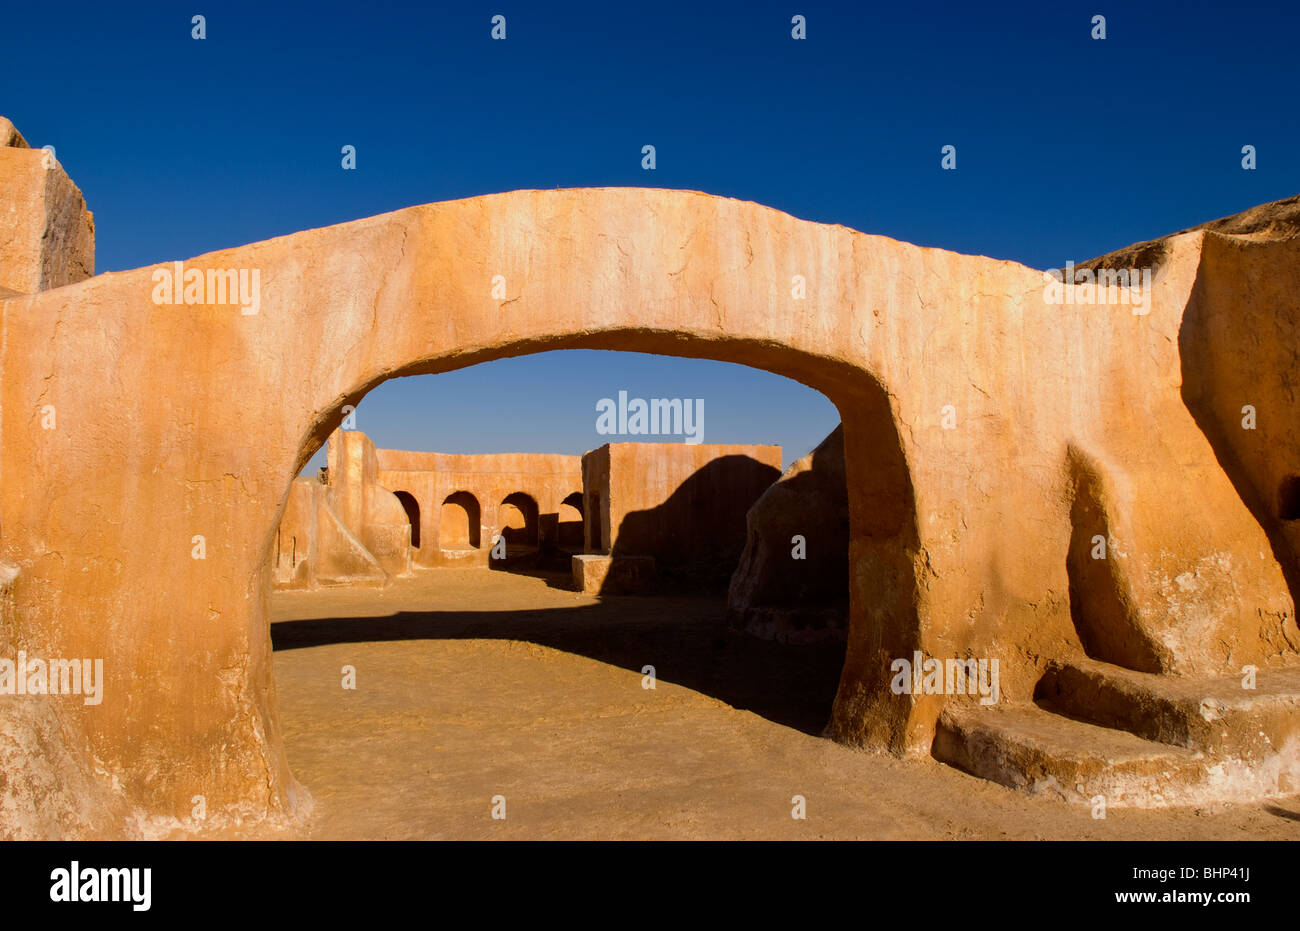 Berühmte Film-Set von Star Wars-Filme in der Sahara Wüste in der Nähe von Tozeur Tunesien Afrika Stockfoto